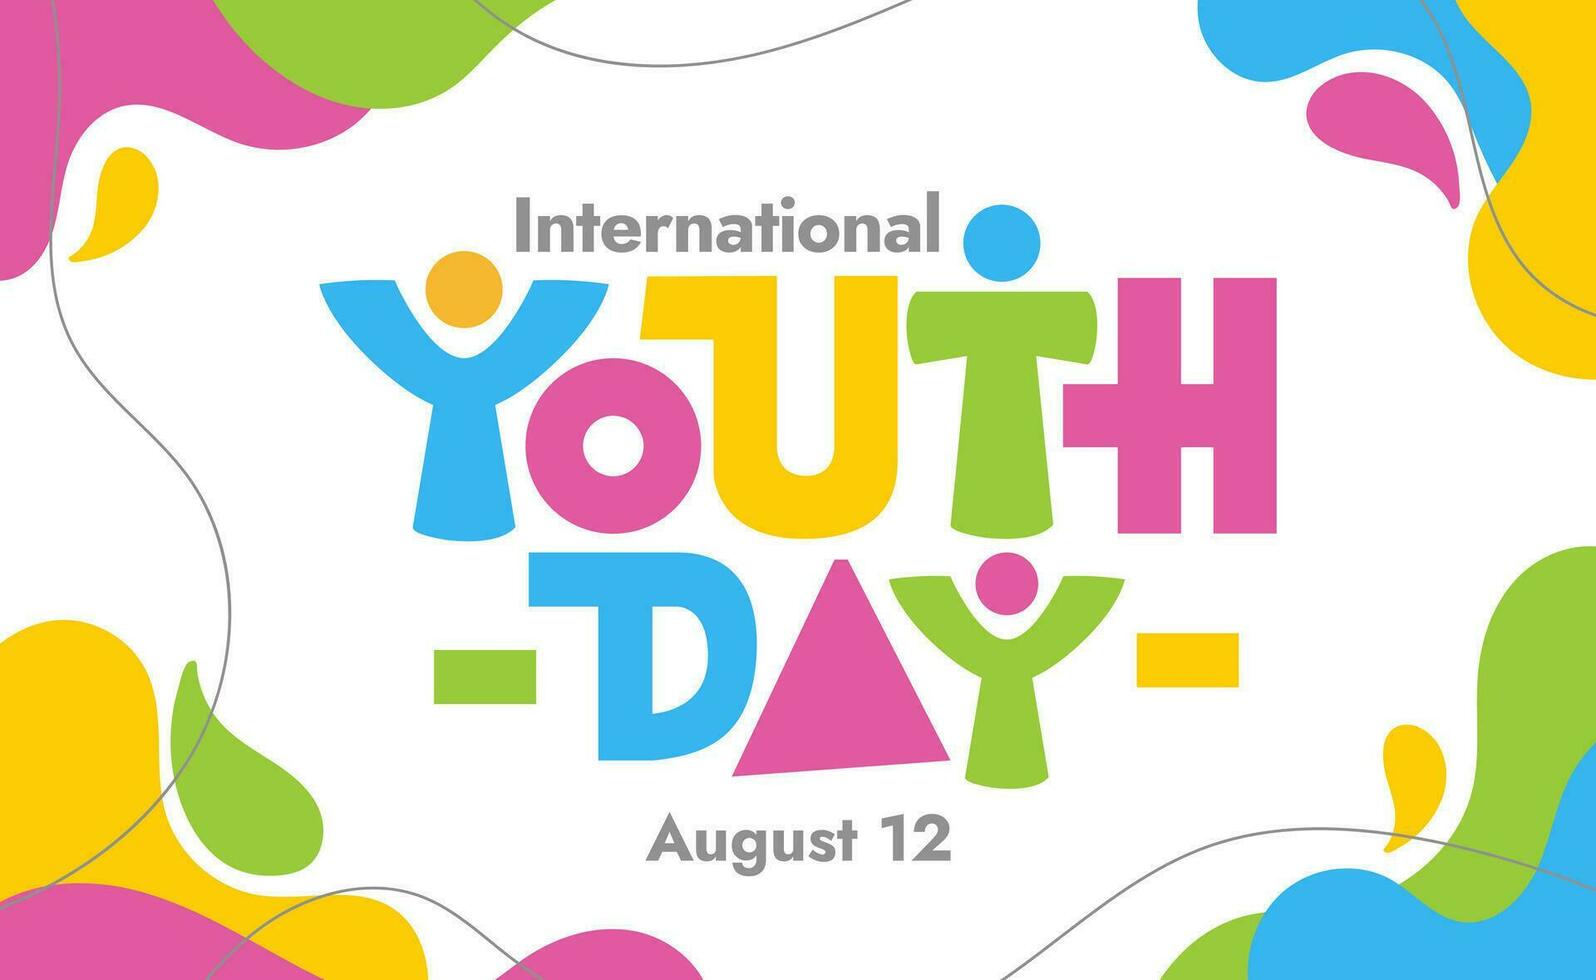 gemakkelijk kleurrijk Internationale jeugd dag logo typografie in meetkundig plons stijl vector